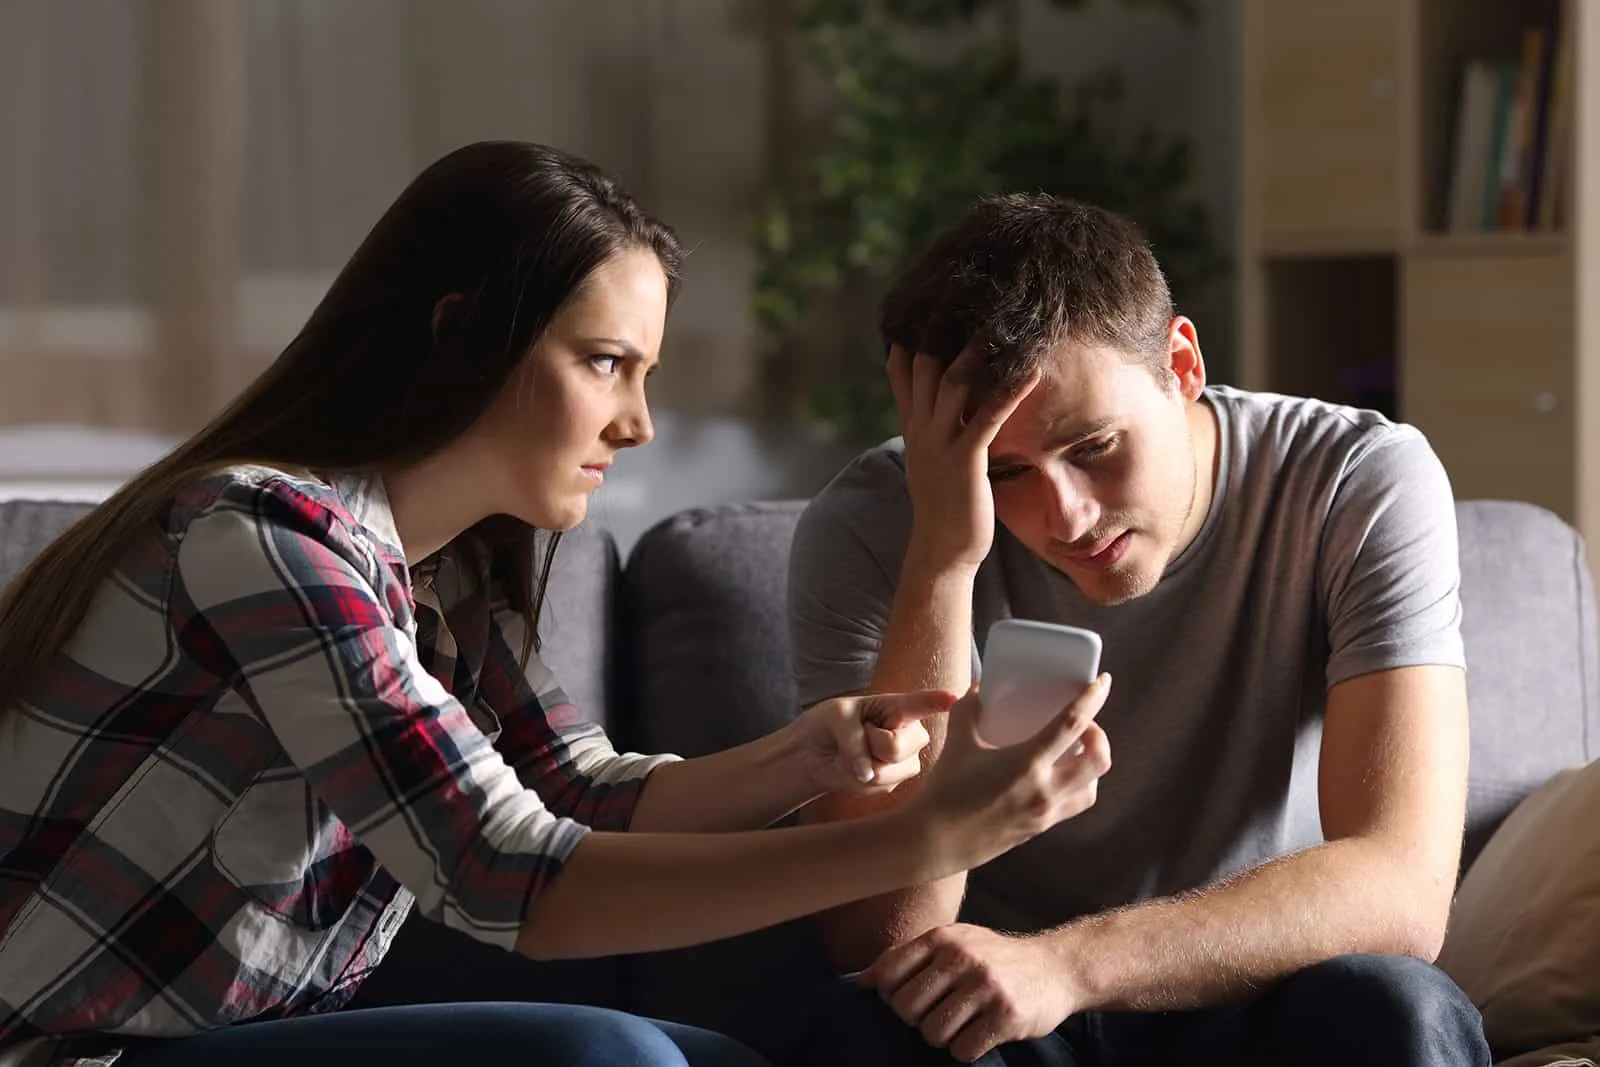 Eine eifersüchtige Frau zeigt ihrem verzweifelten Freund ein Smartphone und bittet um eine Erklärung